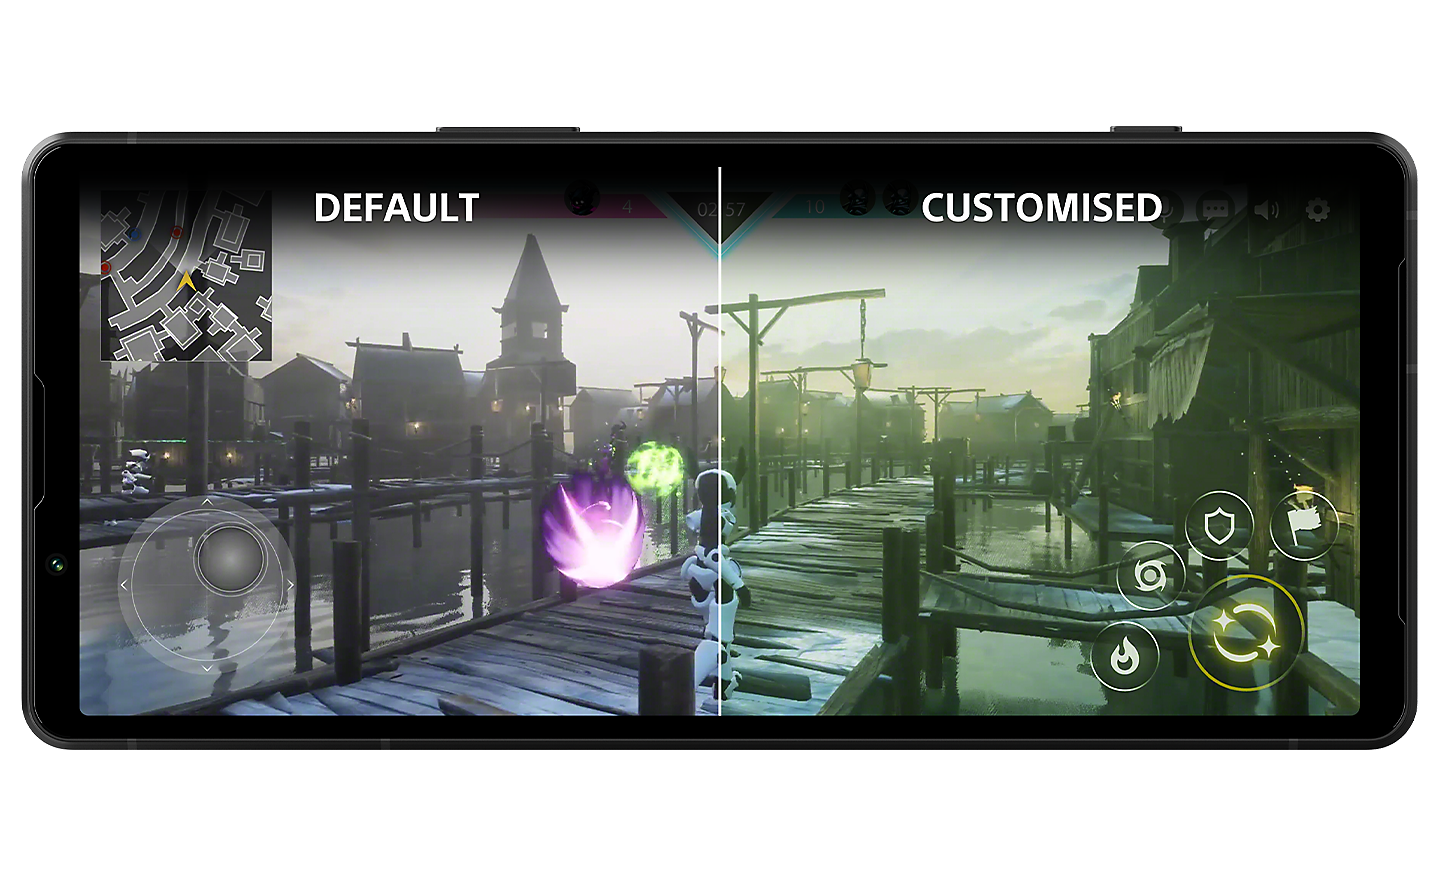 Un Xperia 5 V dont l'écran affiche une image fractionnée du jeu et dont les couleurs diffèrent avec le texte « DEFAULT » (par défaut) à gauche et « CUSTOMISED » (personnalisé) à droite